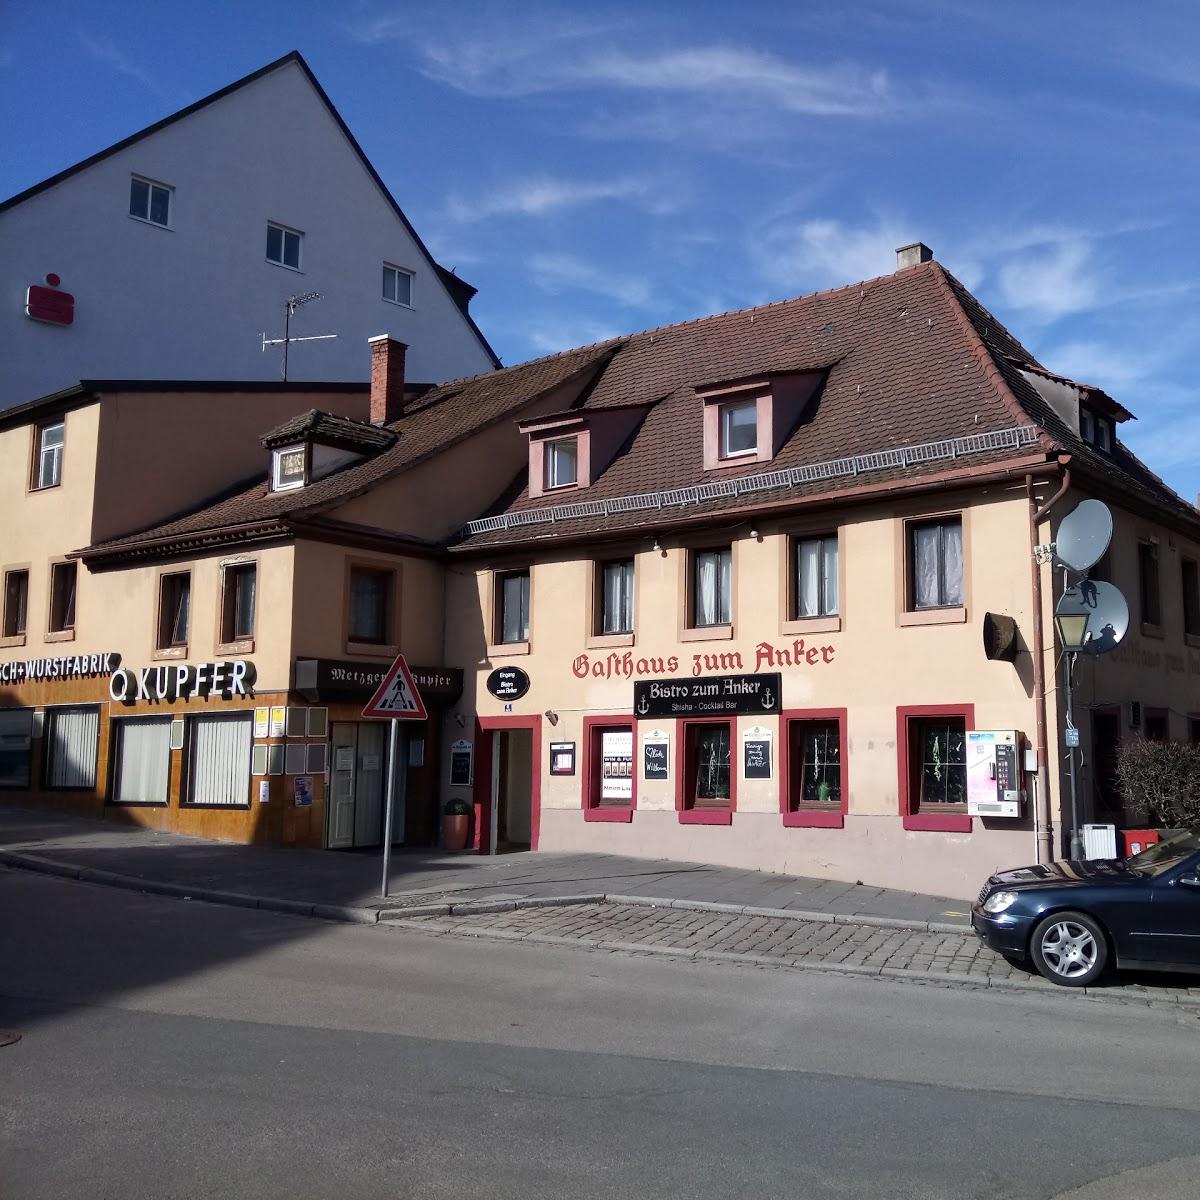 Restaurant "Bistro zum Anker" in  Heilsbronn